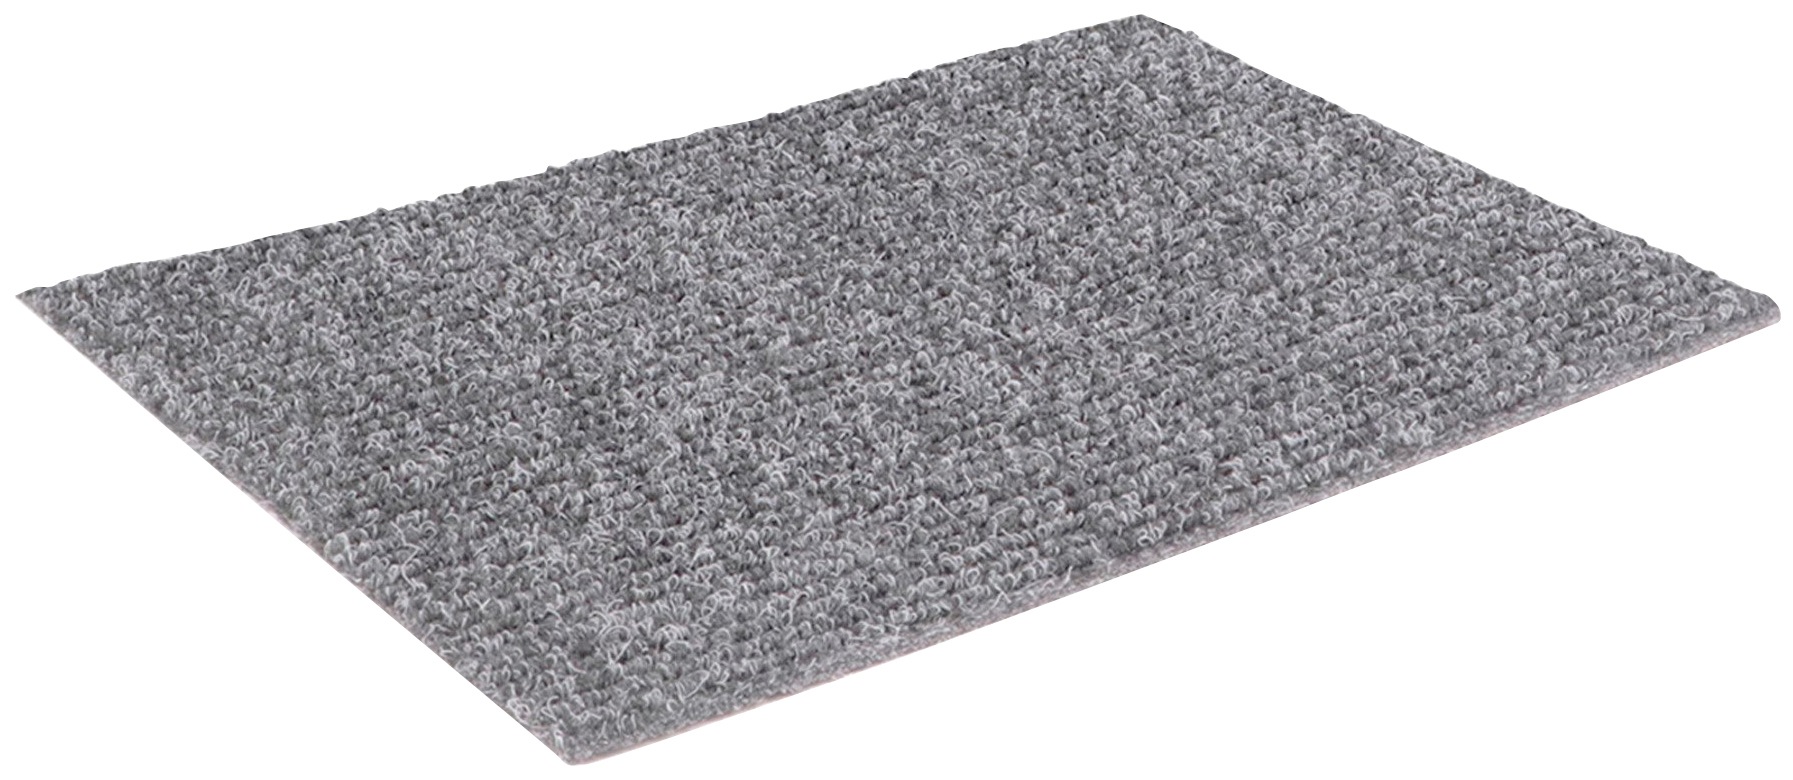 Rips Nadelfilz Teppich-Boden GLADIATOR als Meterware - Grau, 2,00m x 5,00m, Schwer Entflammbarer, Gerippter Bodenbelag